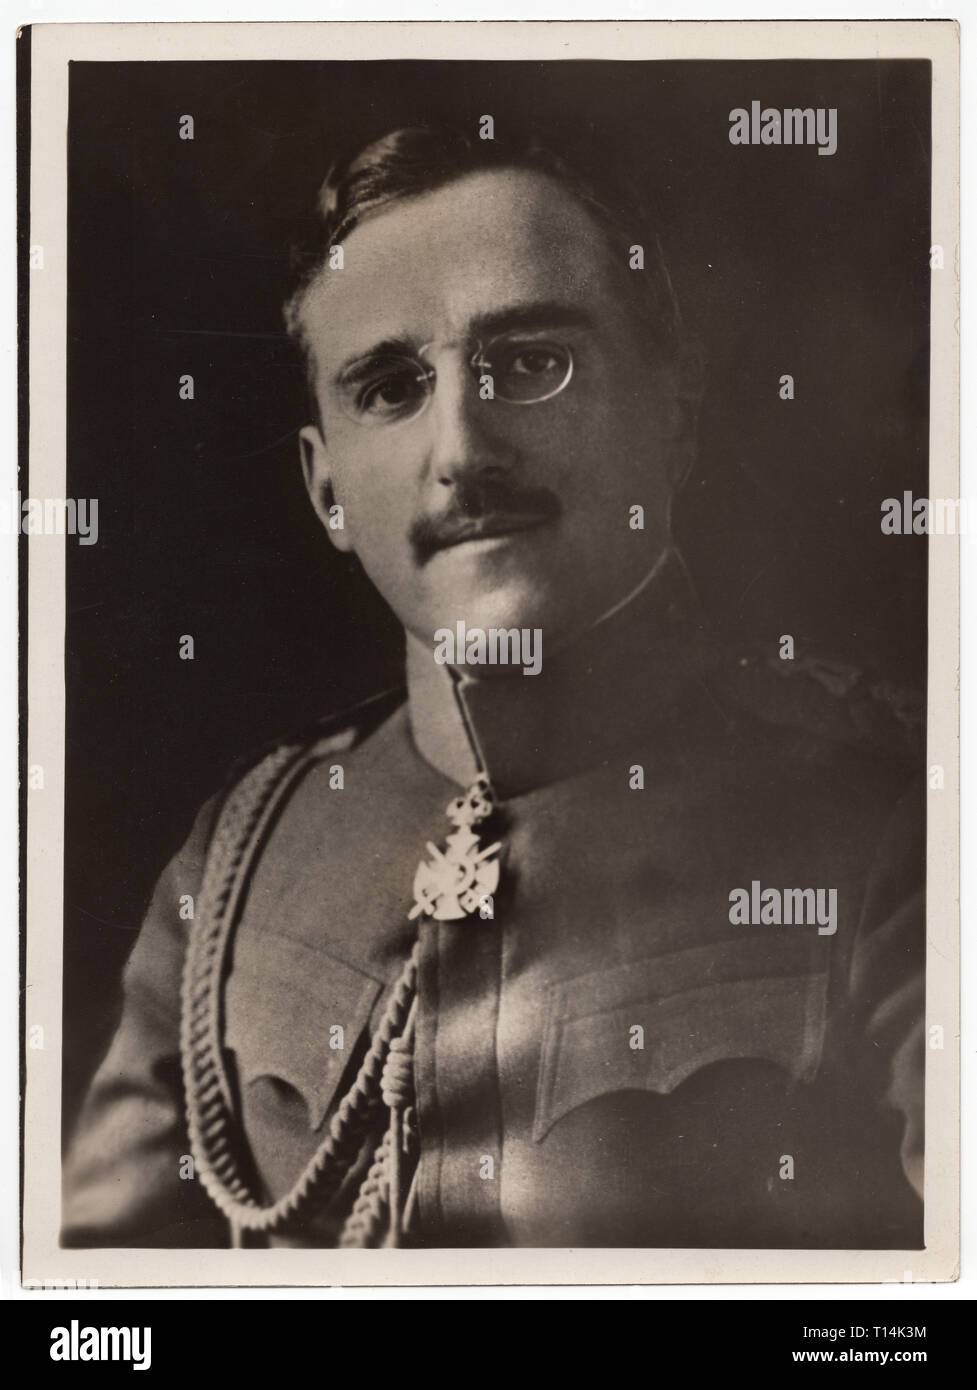 Re Alessandro I di Iugoslavia (1888-1934) rappresentata nel non datate in bianco e nero vintage fotografia di un fotografo sconosciuto. La cortesia dell'Azoor Raccolta foto. Foto Stock